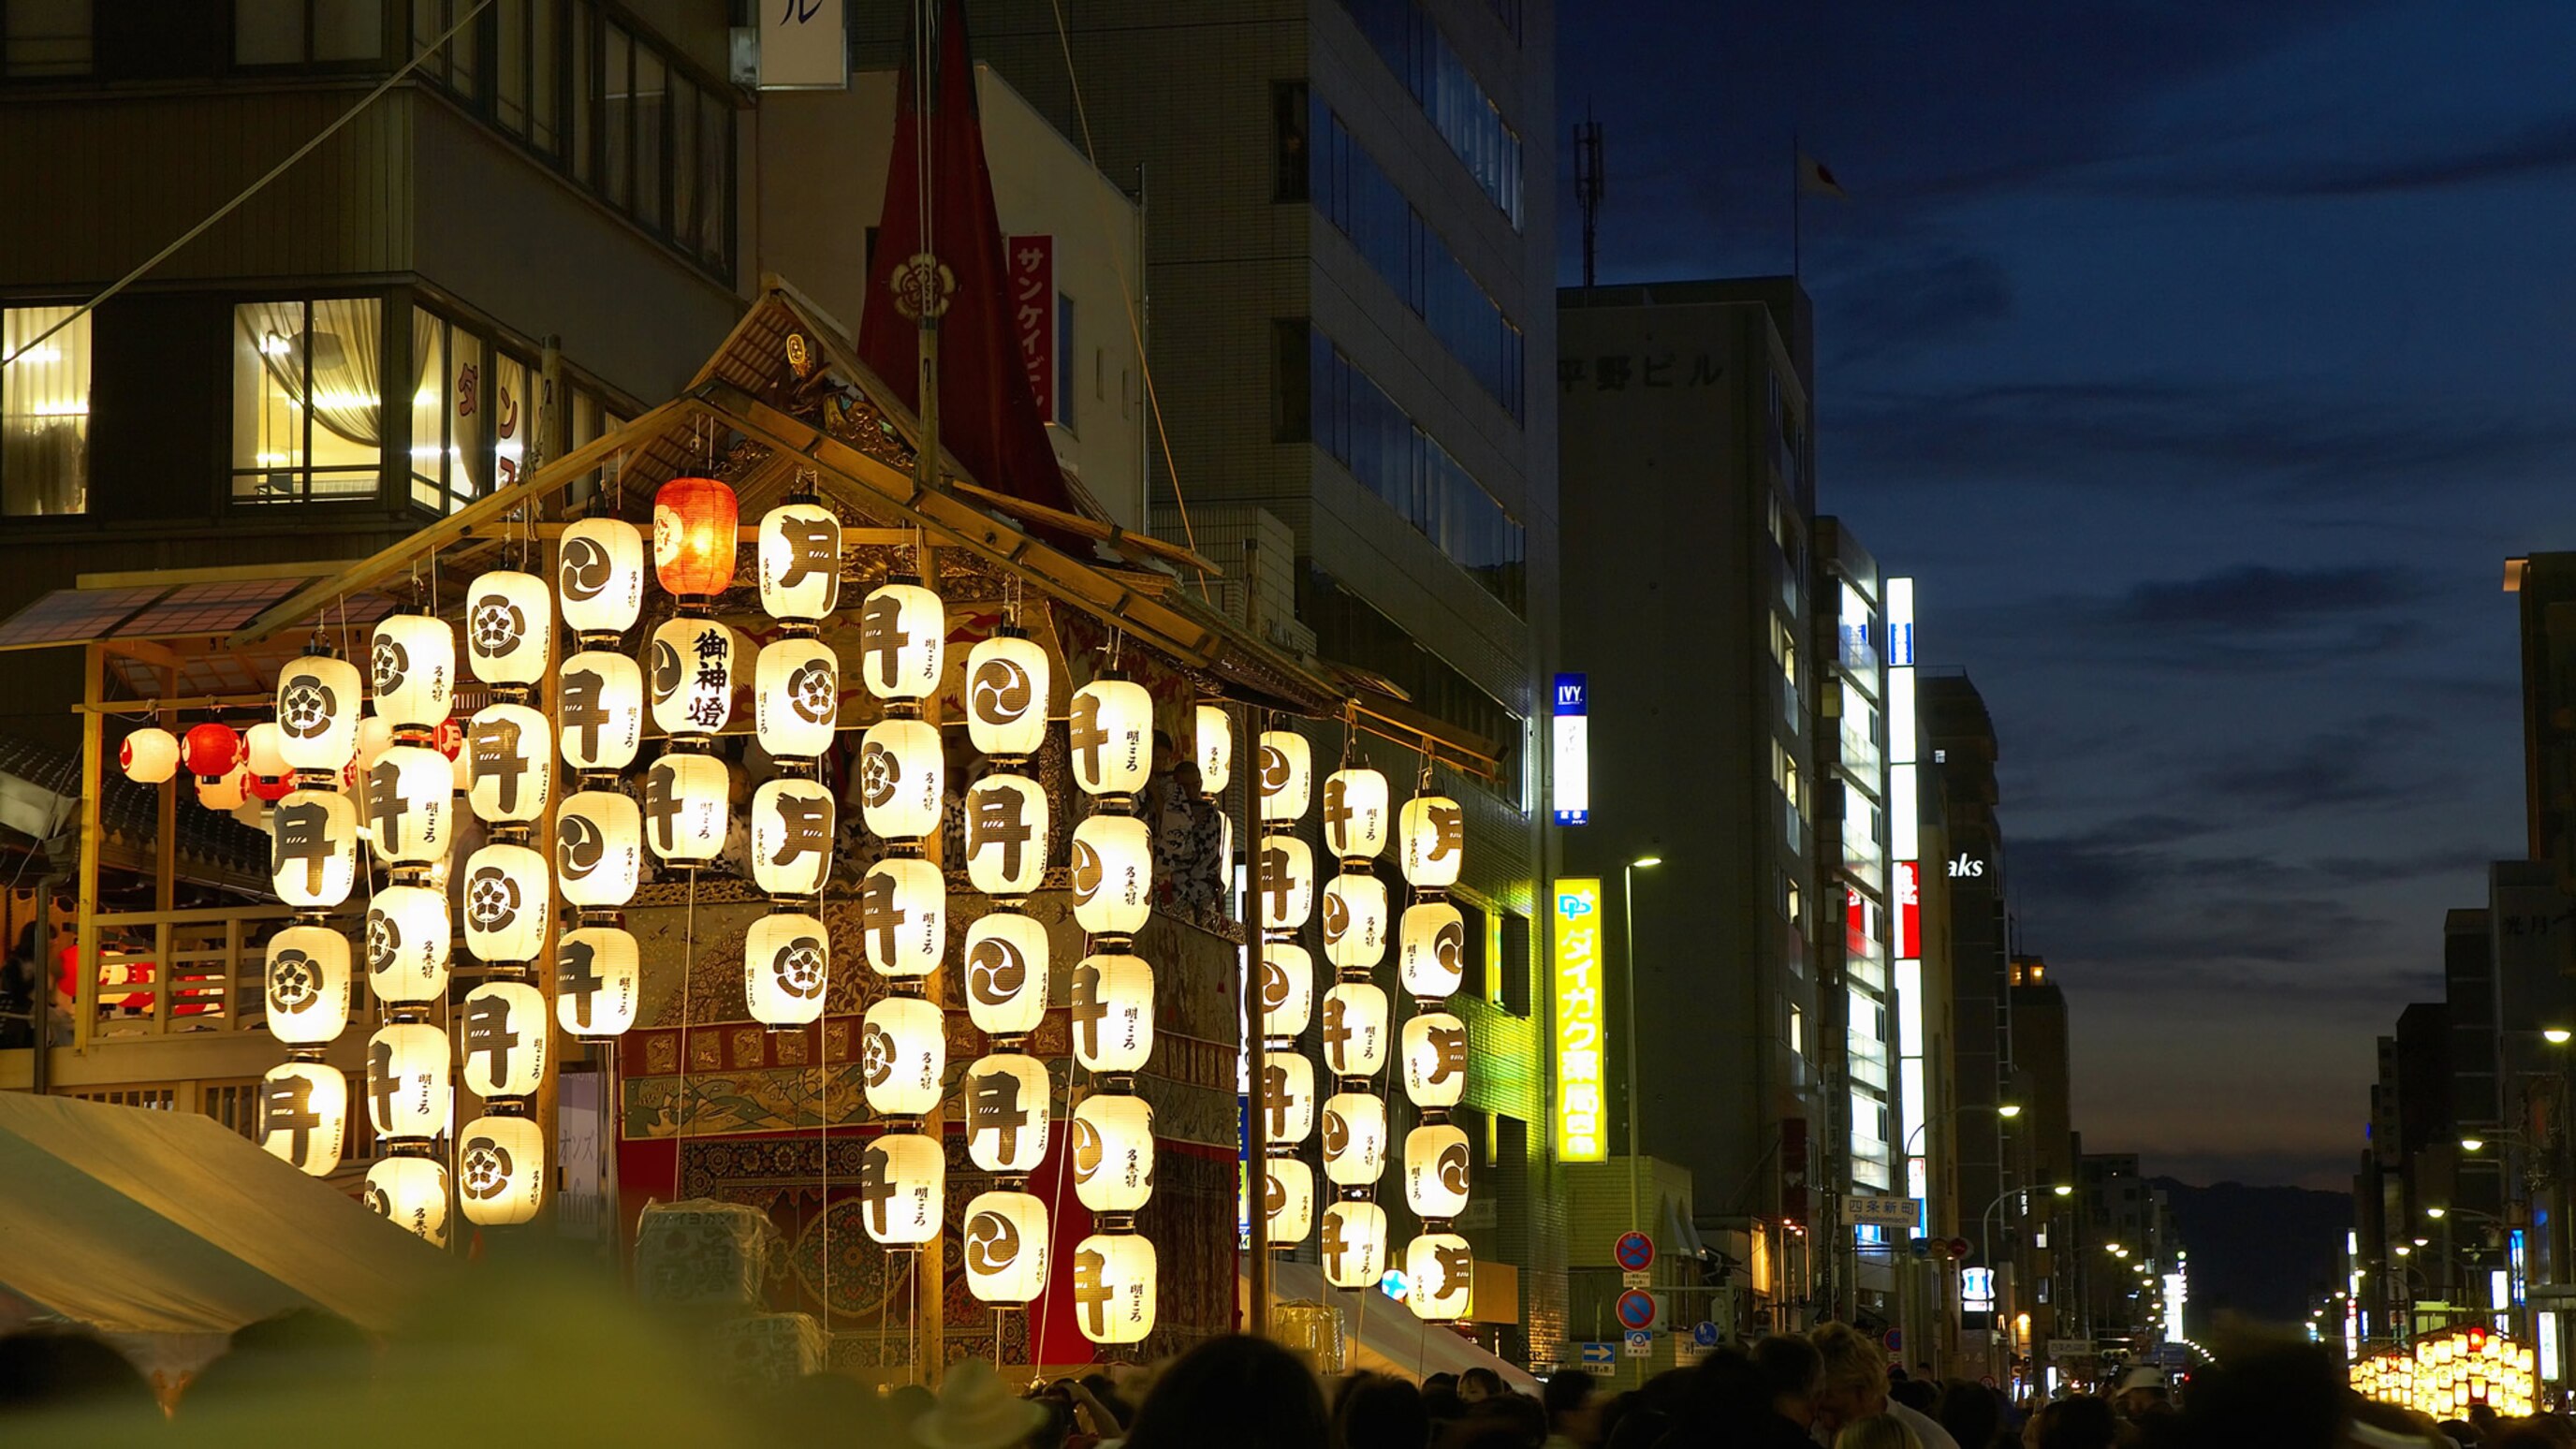 祇園祭／千年以上の歴史を持ち、1か月にわたって多彩な祭事が行われる八坂神社の祭礼です。